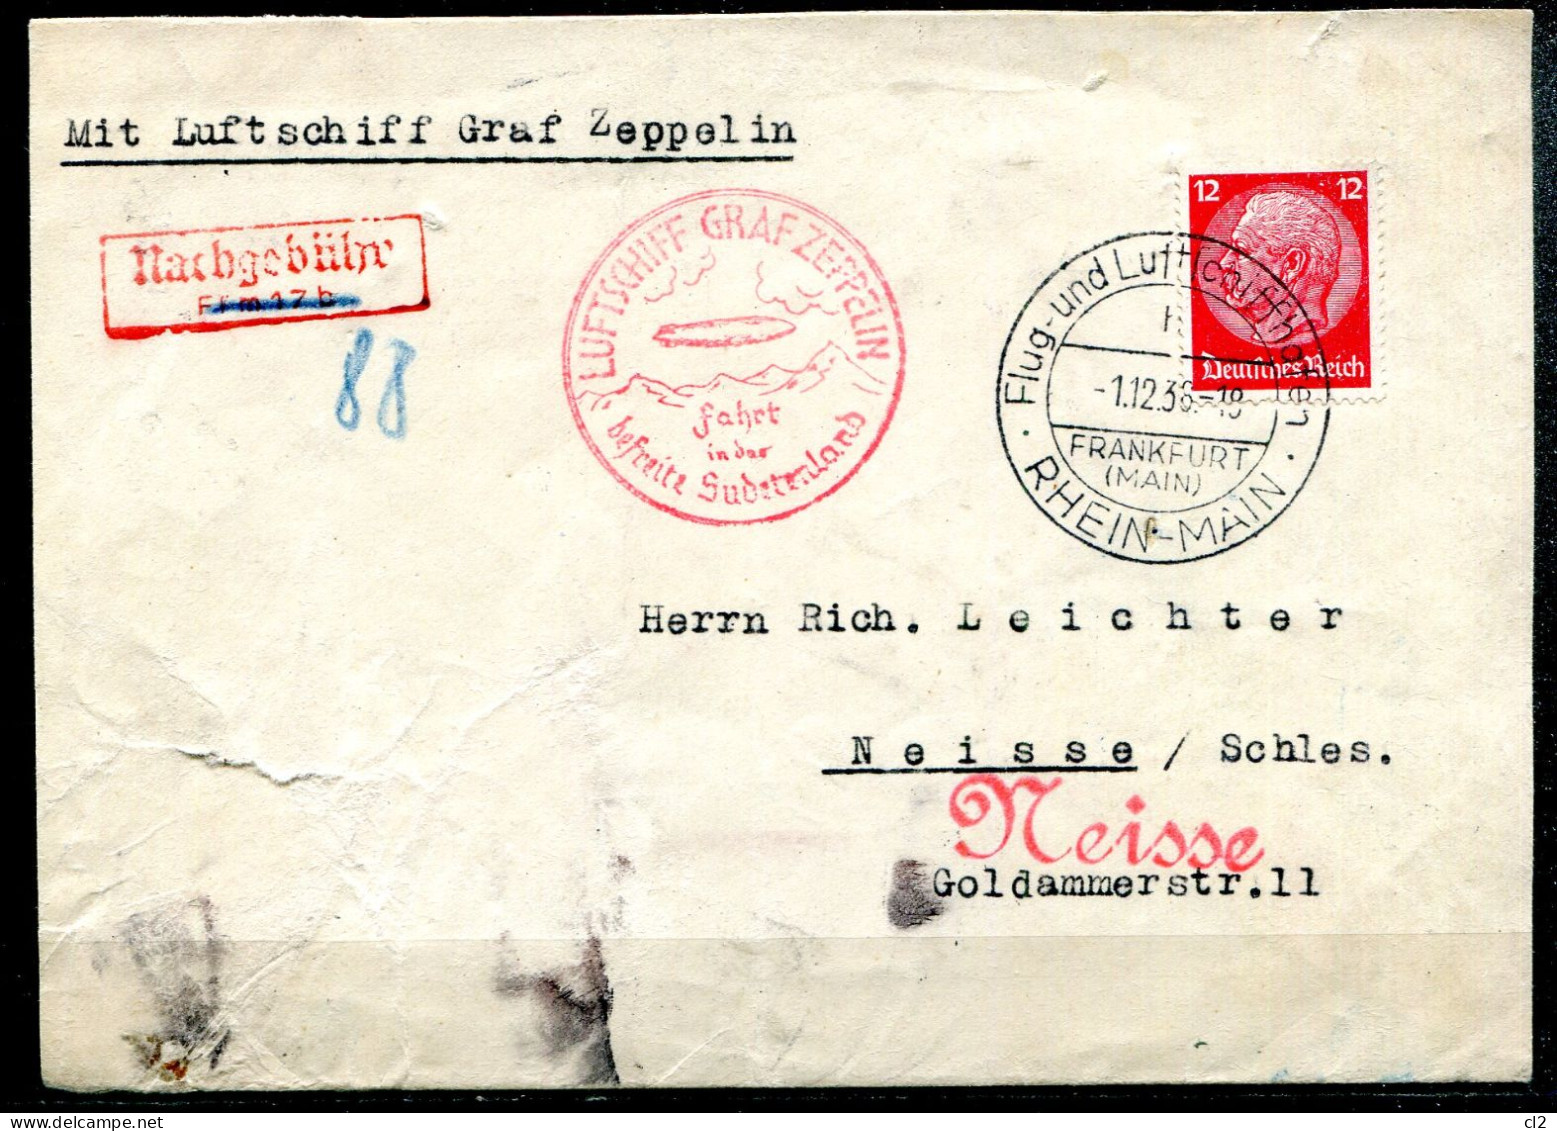 ALLEMAGNE - 1.12.36 - Luftschiff Graf Zeppelin Fahrt In Der Befreite Sudetenland (Frankfurt Nach Neisse/Schles.) - Covers & Documents